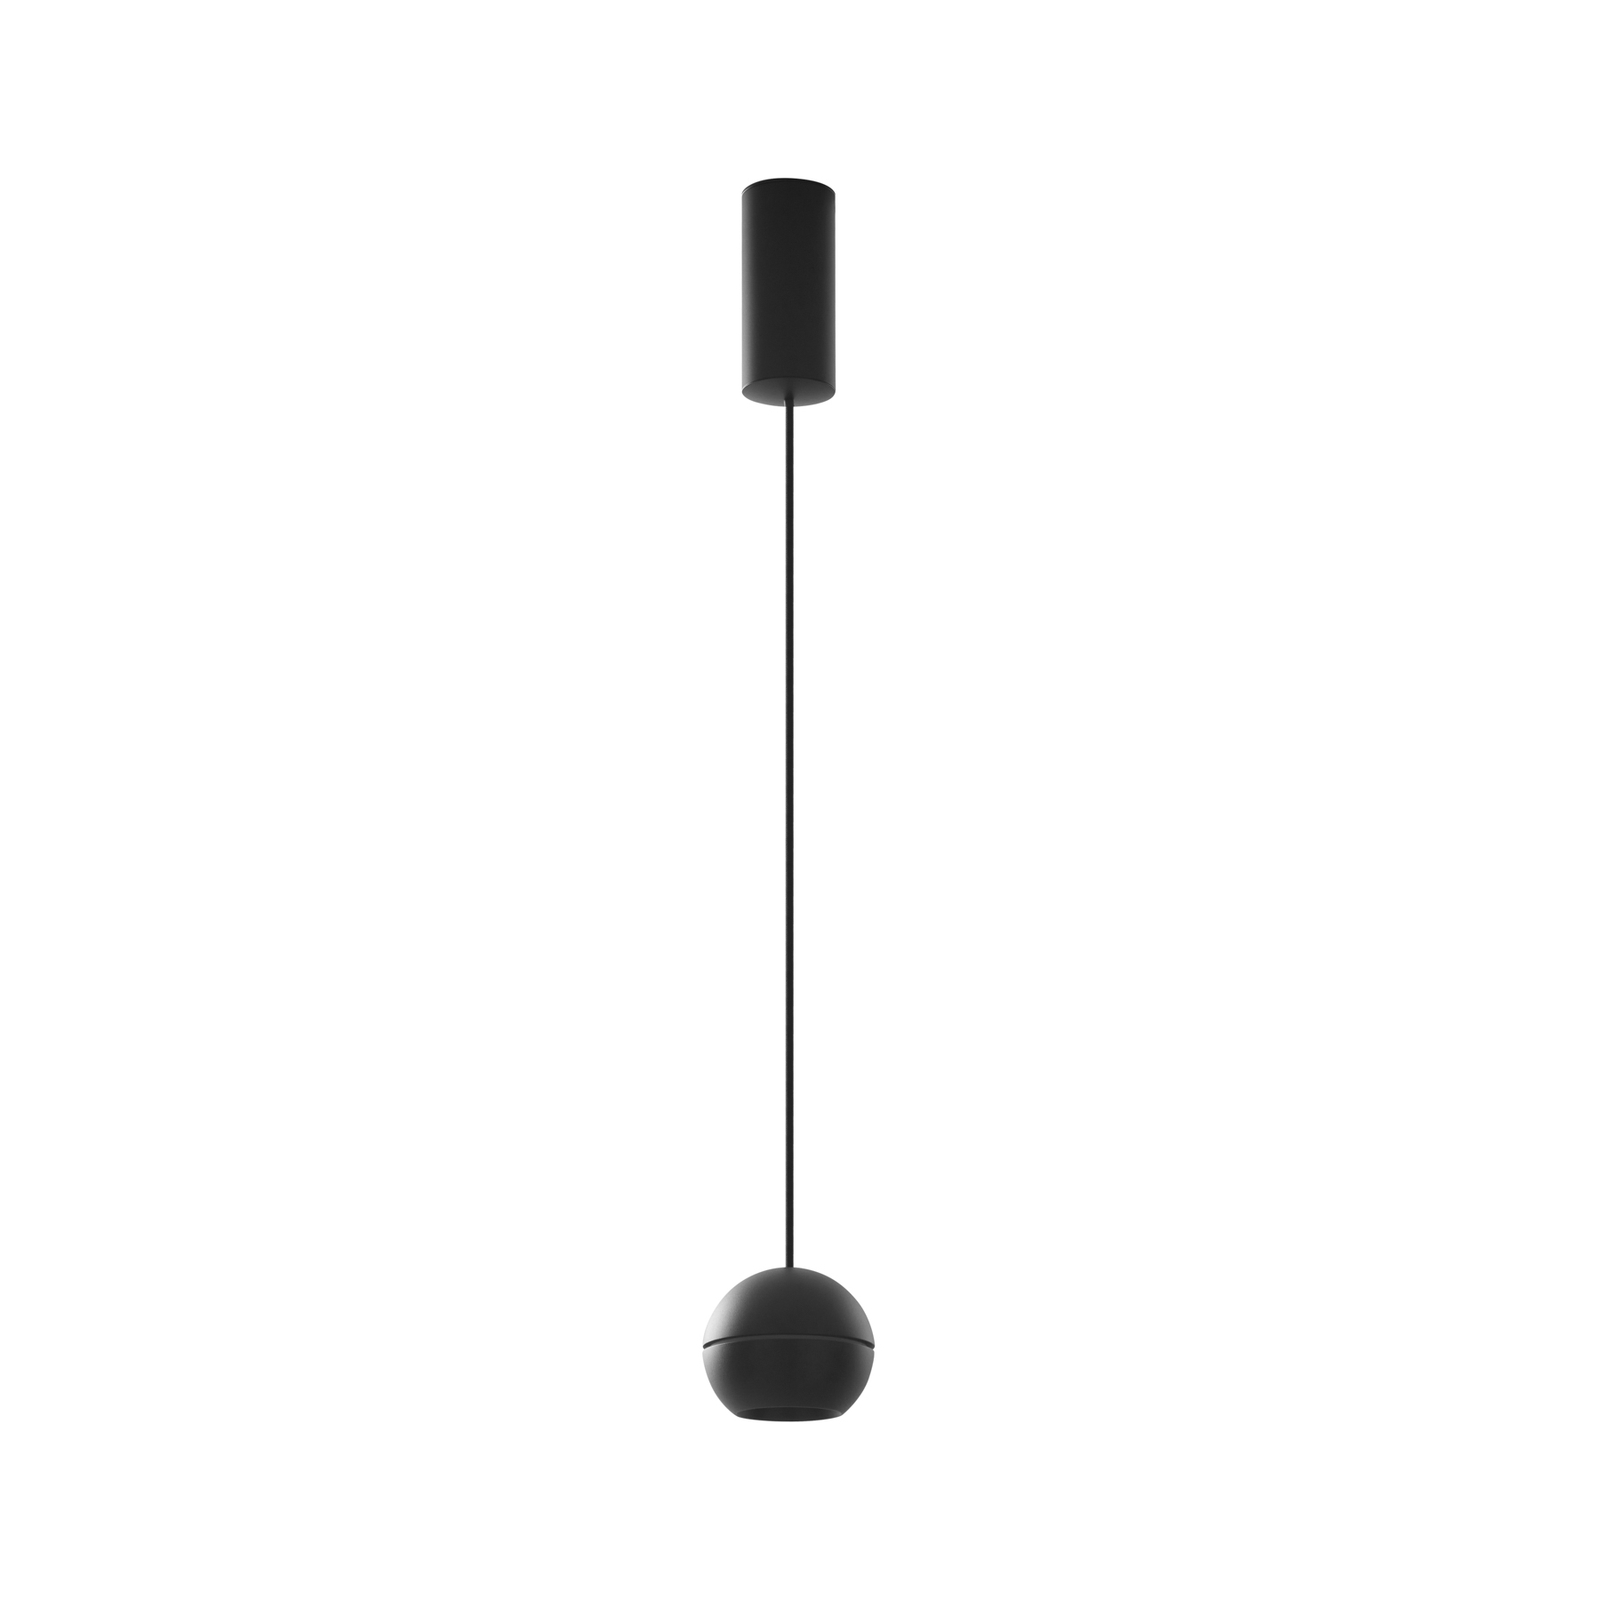 Lucande LED závěsné svítidlo Plarion, černá barva, hliník, Ø 9 cm